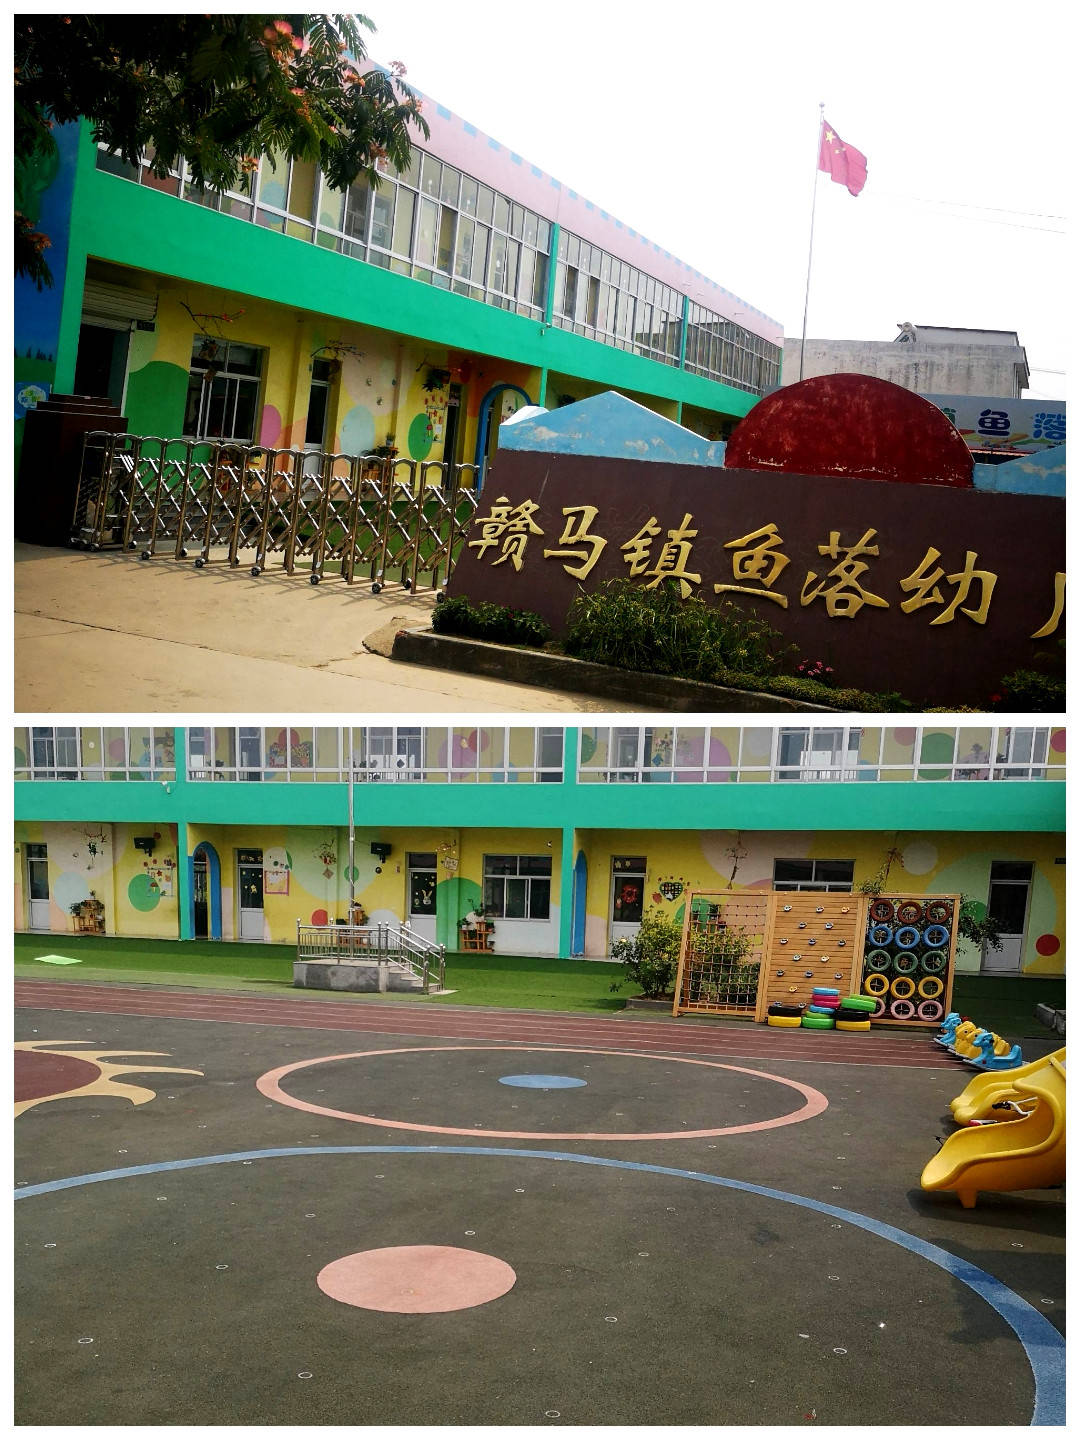 鱼落幼儿园是连云港市优质幼儿园,位于连云港市赣榆区赣马镇鱼落村